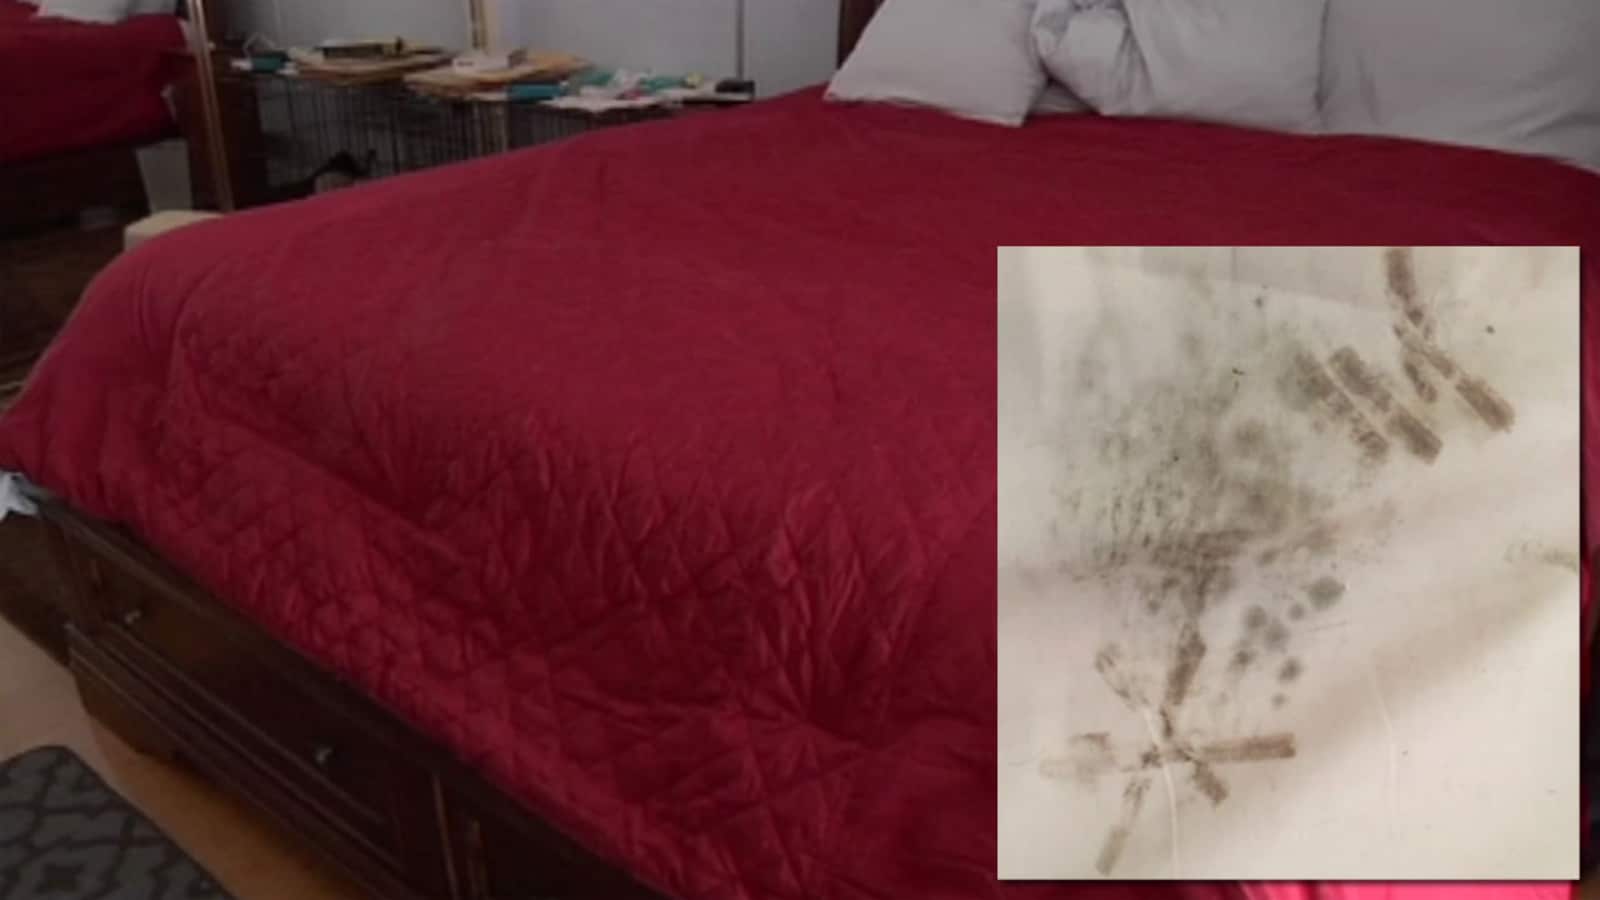 mold on pillow top mattress